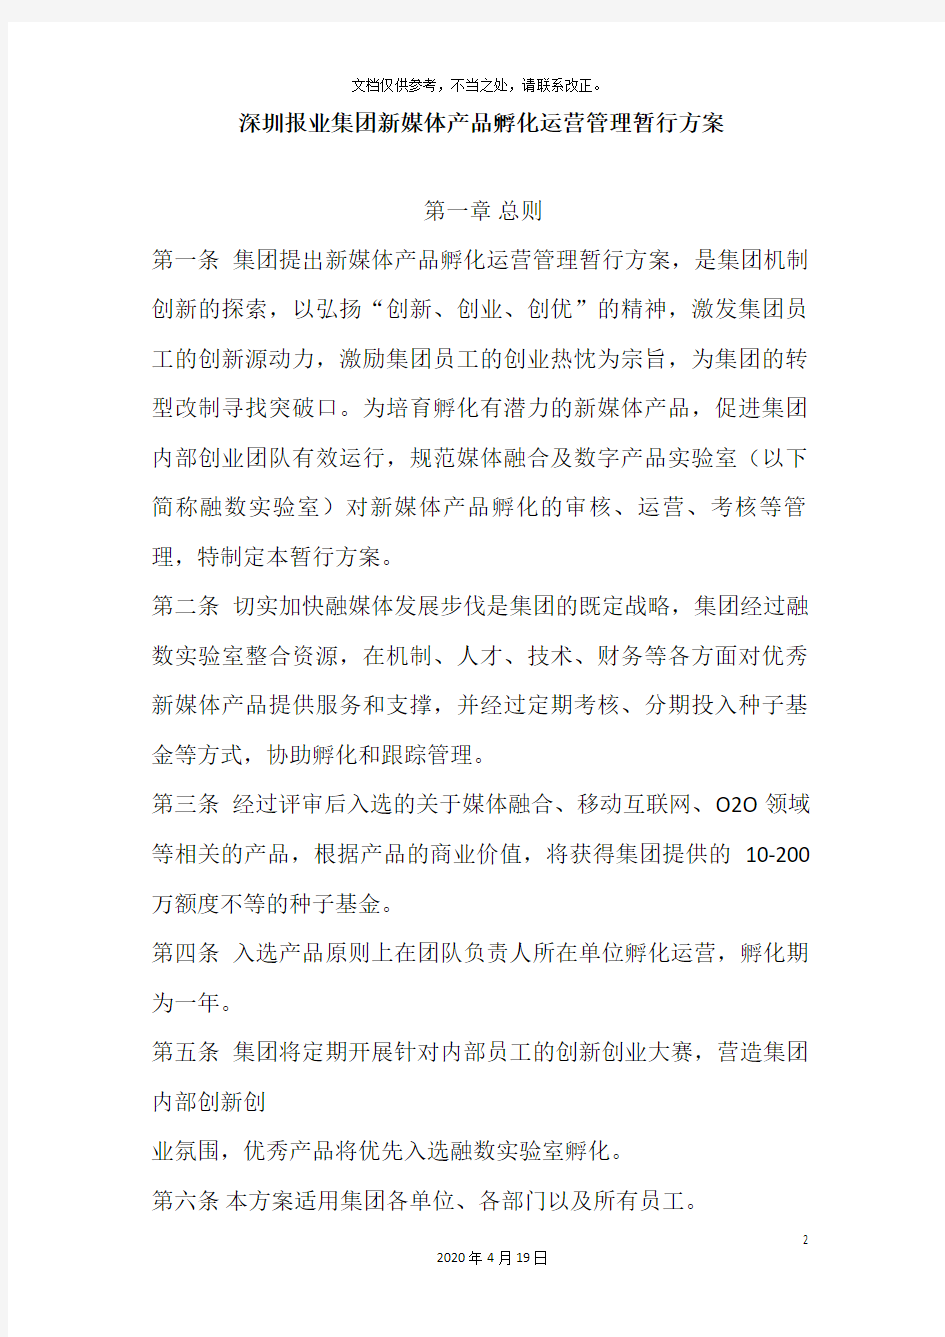 深圳报业集团新媒体产品孵化运营管理暂行方案